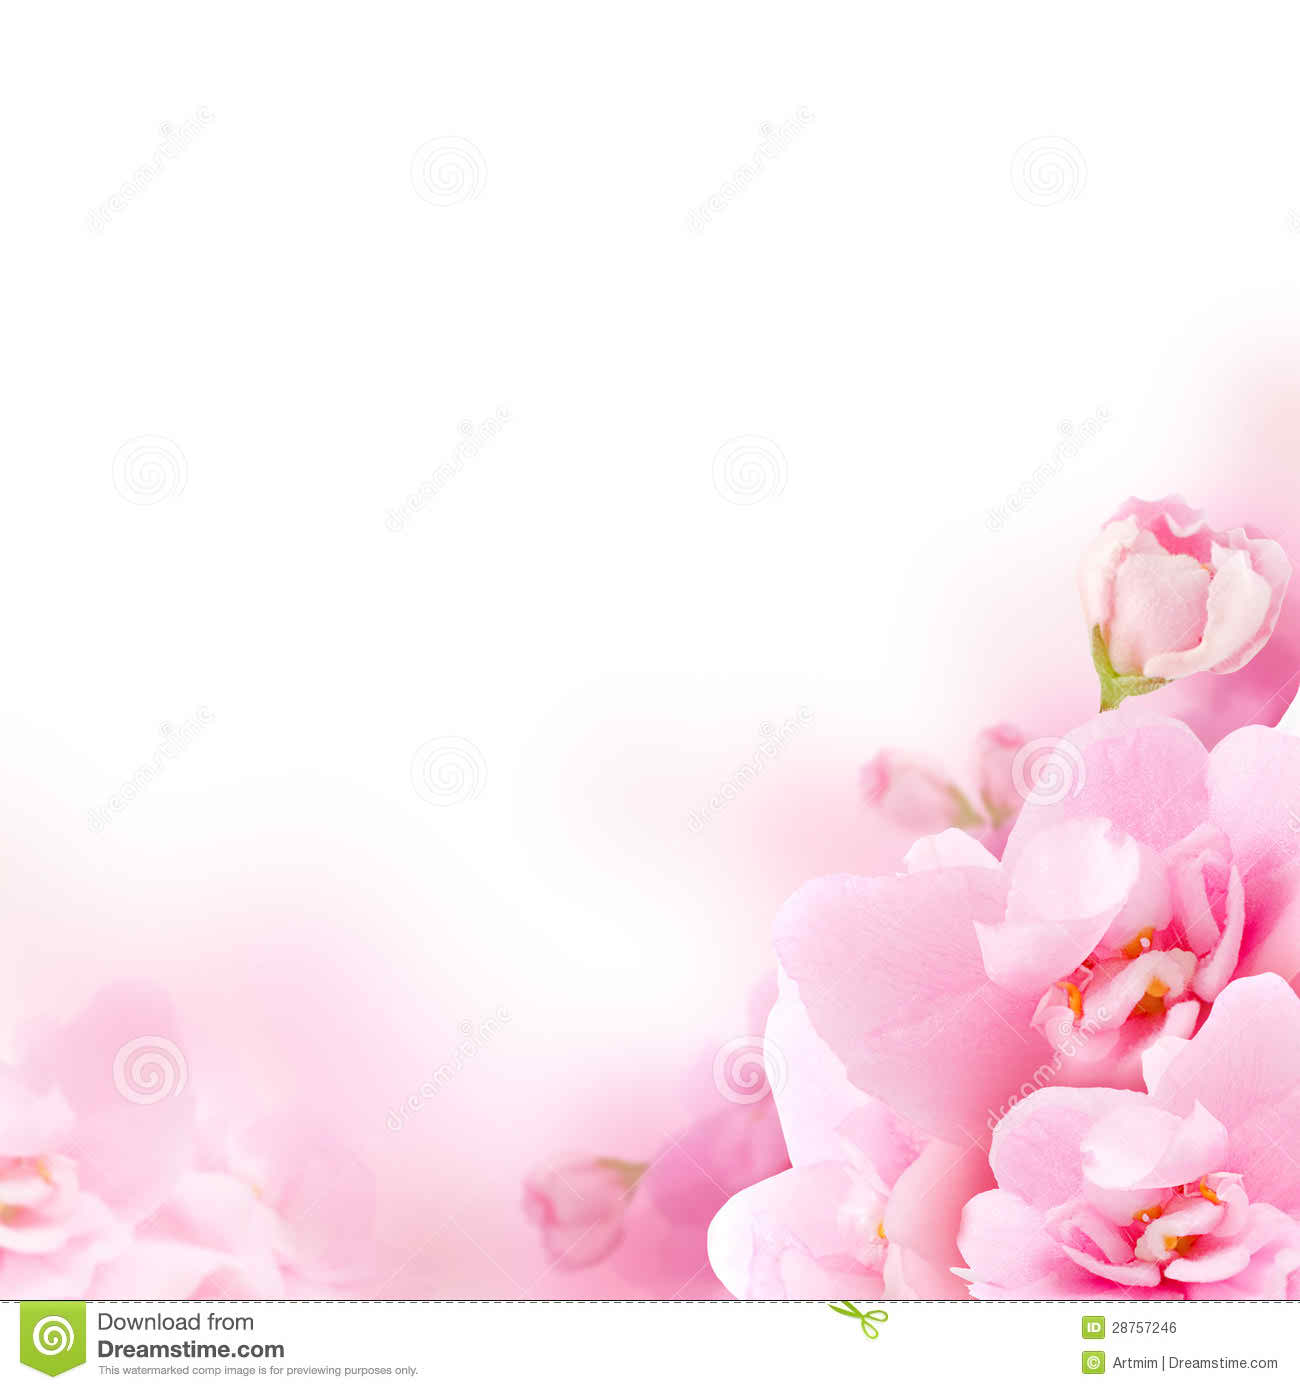 Free Download Background White Background Pink Flowers Background Light Pink Flowers 1300x1390 For Your Desktop Mobile Tablet Explore 73 Pink Flower Backgrounds Pink Flowers Wallpaper Free Pink Flower Wallpaper